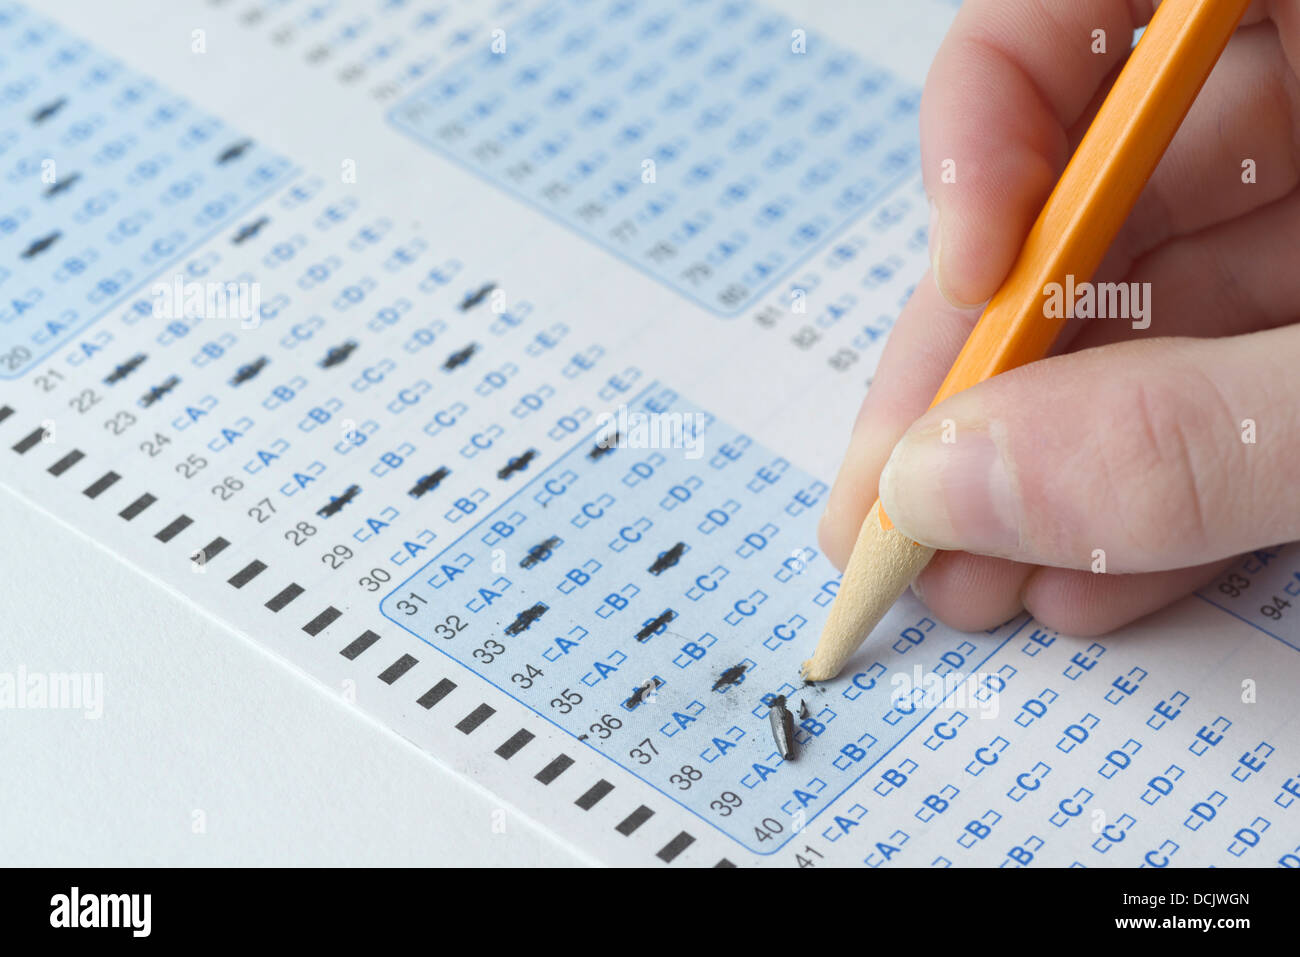 Optical scan answer sheet for a school exam - broken pencil tip Stock Photo